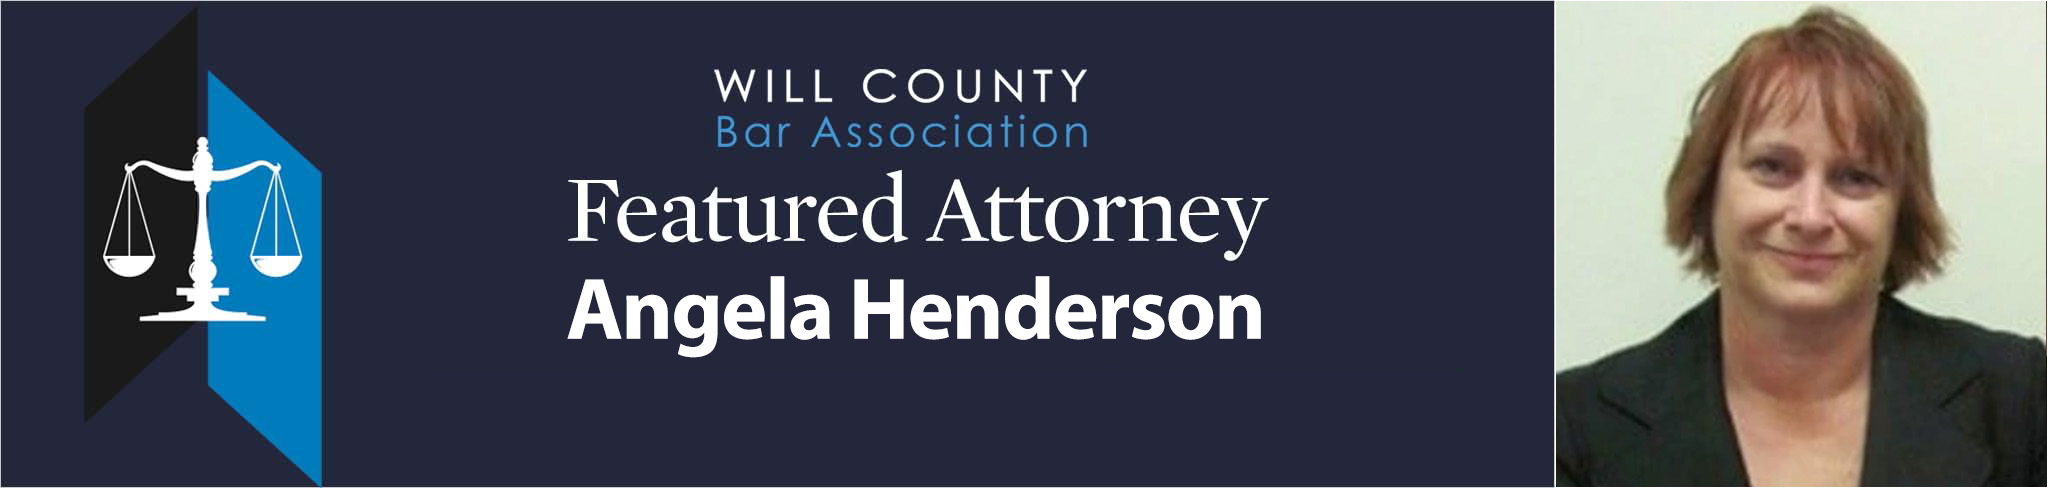 Attorney Angela Henderson